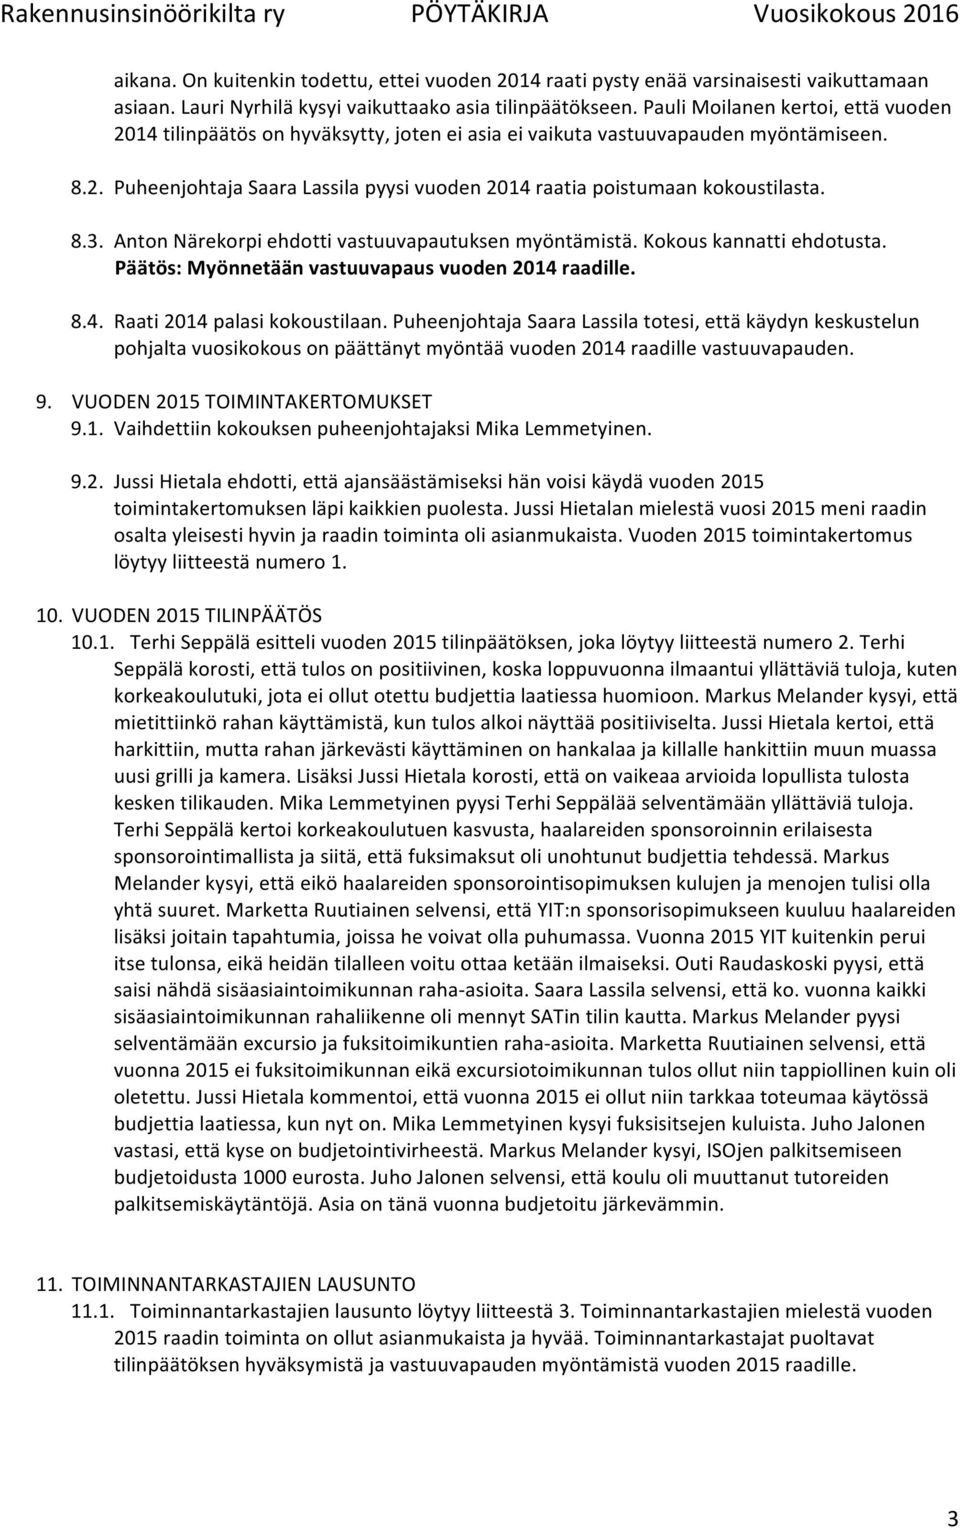 8.3. Anton Närekorpi ehdotti vastuuvapautuksen myöntämistä. Kokous kannatti ehdotusta. Päätös: Myönnetään vastuuvapaus vuoden 2014 raadille. 8.4. Raati 2014 palasi kokoustilaan.